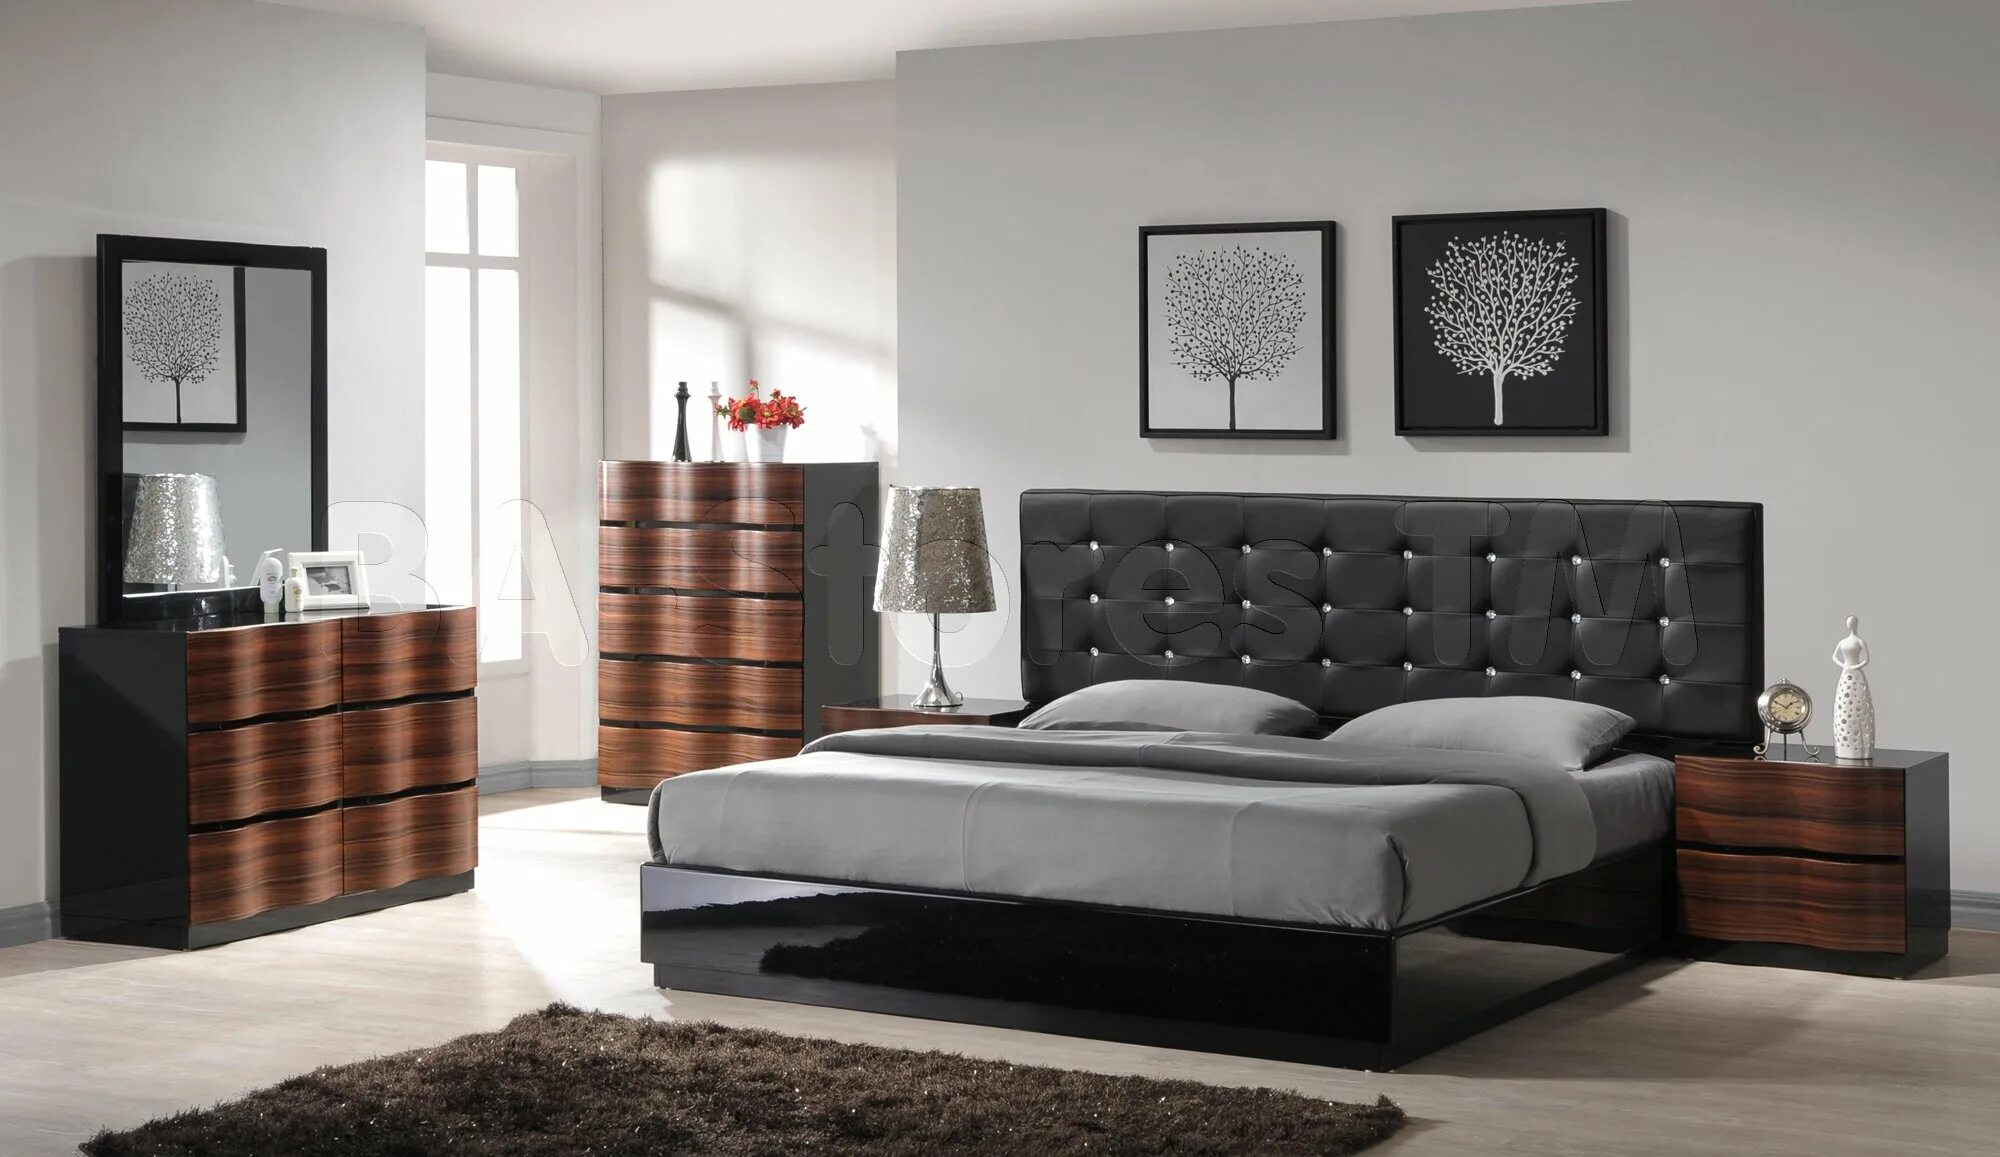 Ashley Furniture кровать черная. Кровать Модерн - стиль. Кровать в интерьере спальни. Спальня в стиле Модерн.